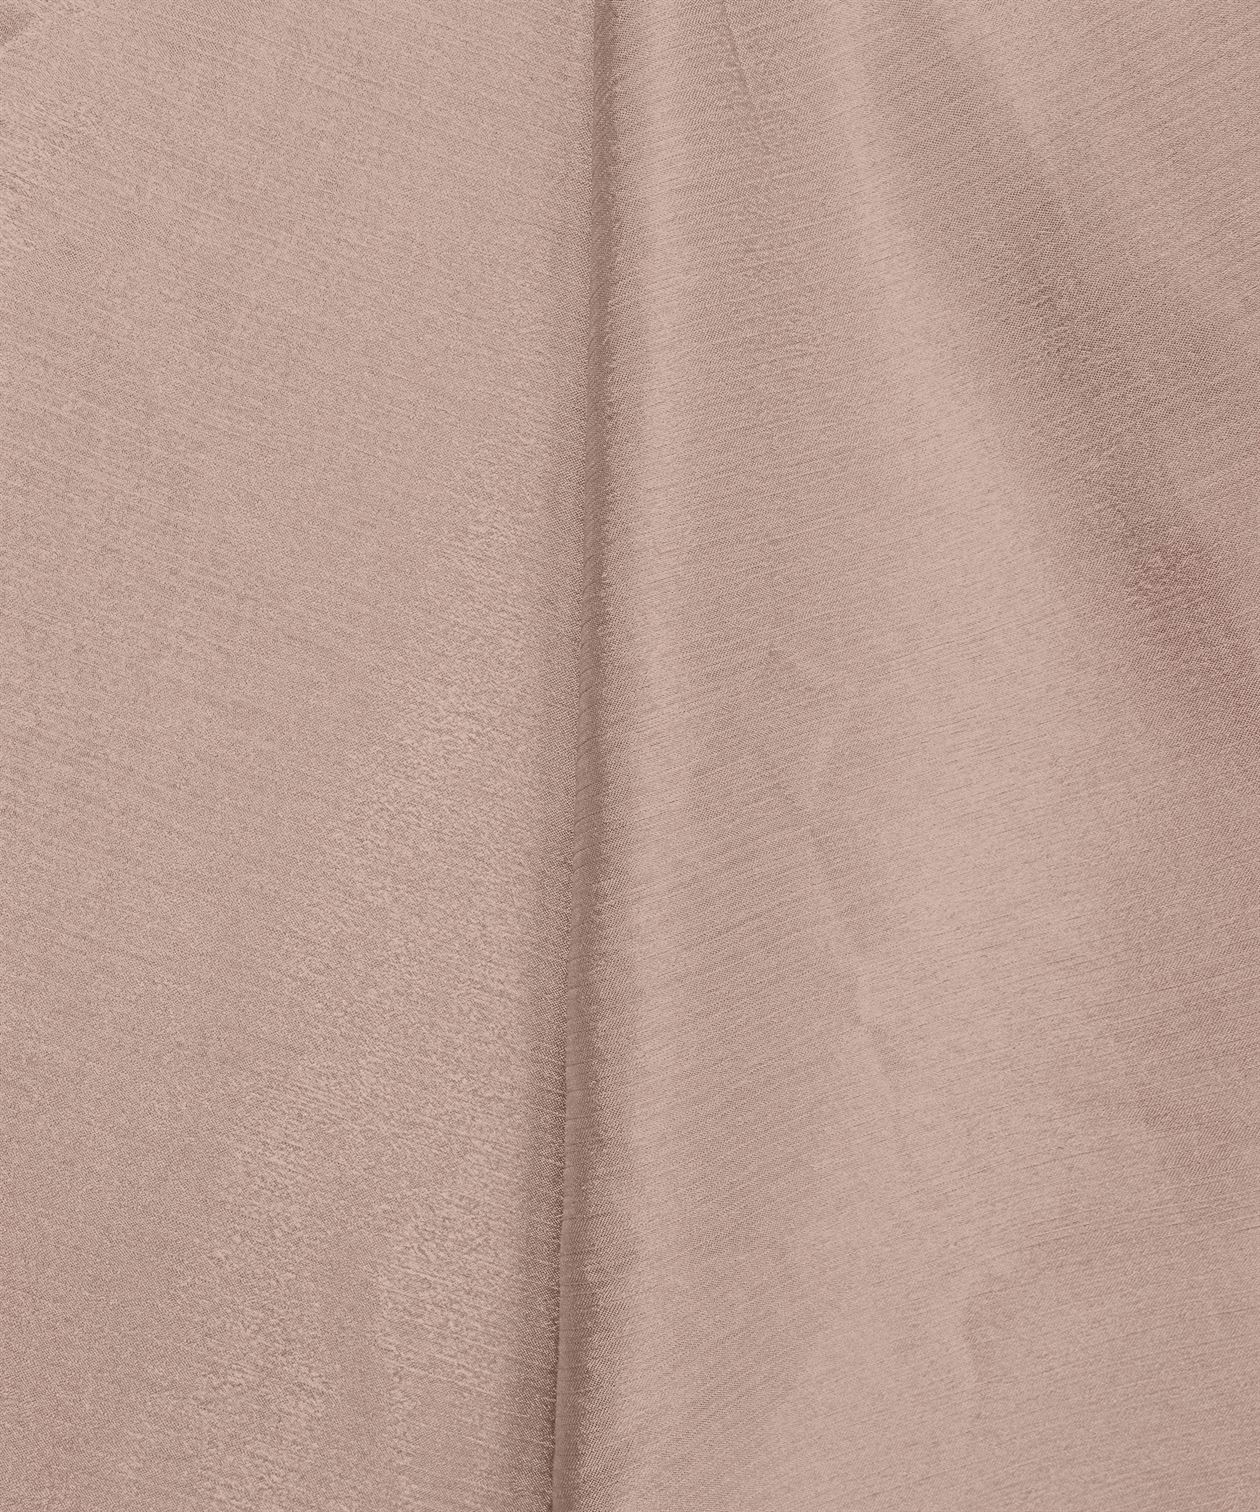 Wheat Plain Dyed Bright Chiffon Fabric